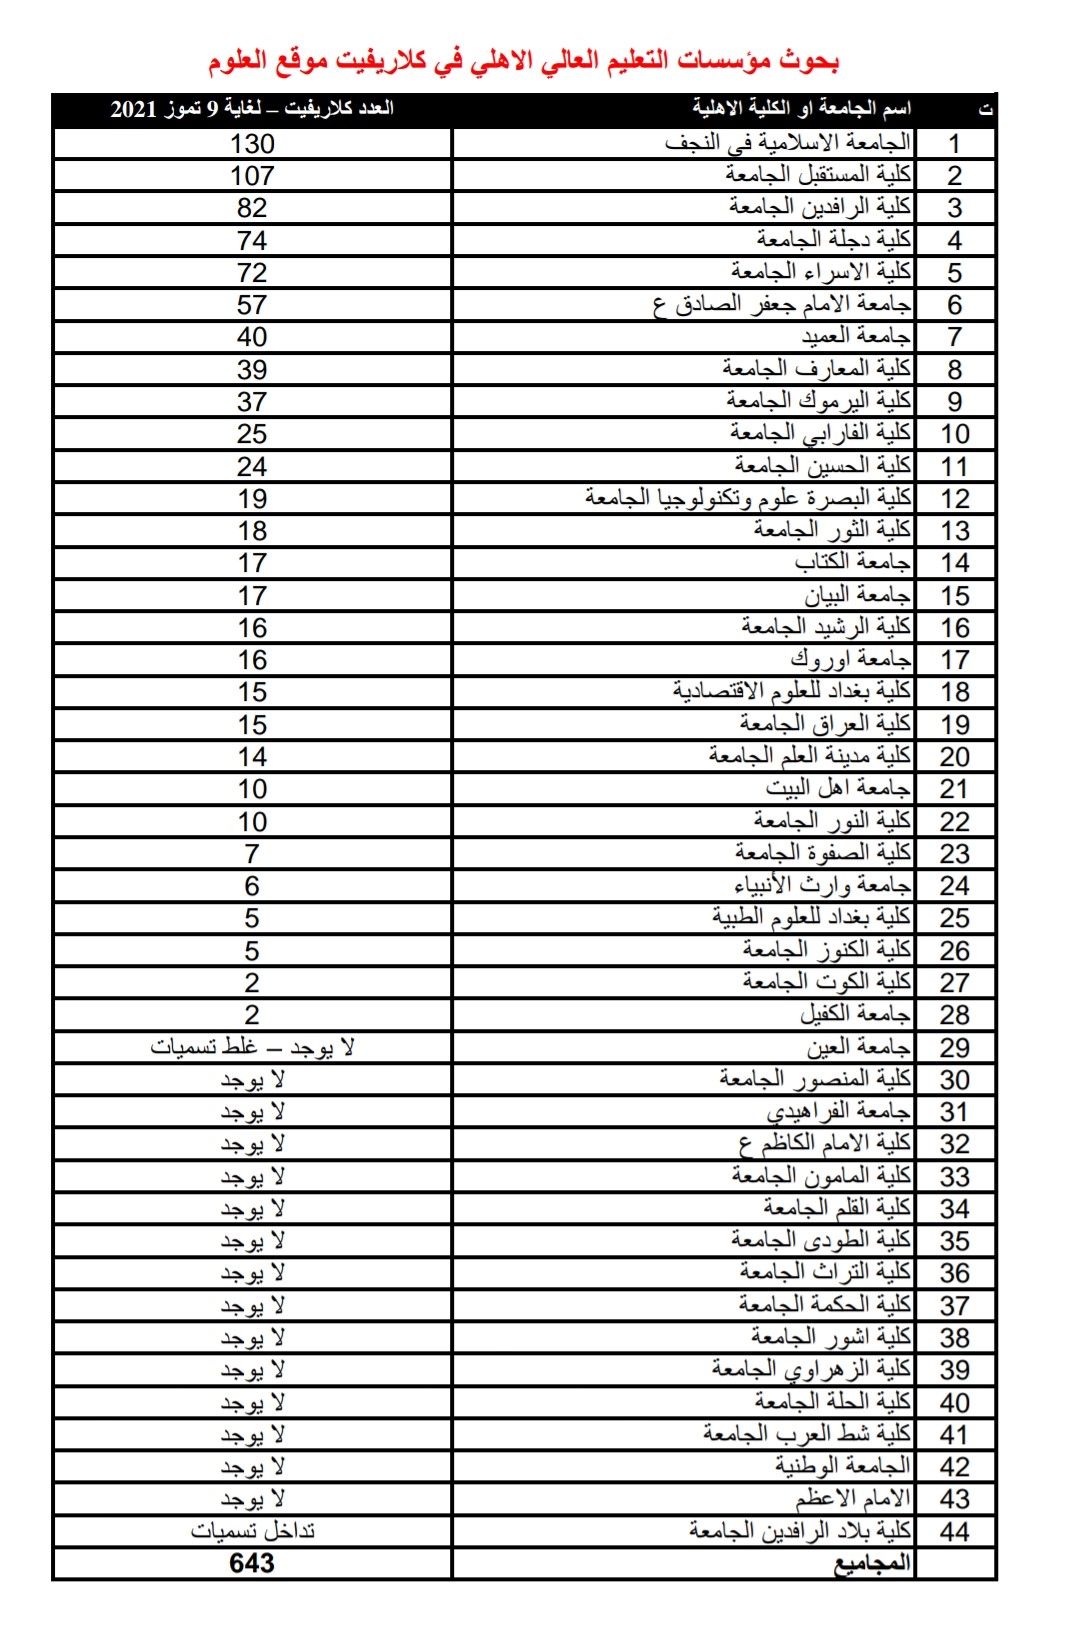 الجامعة الاسلامية تتصدر الجامعات والكليات الأهلية في العراق P_2173qw3d32